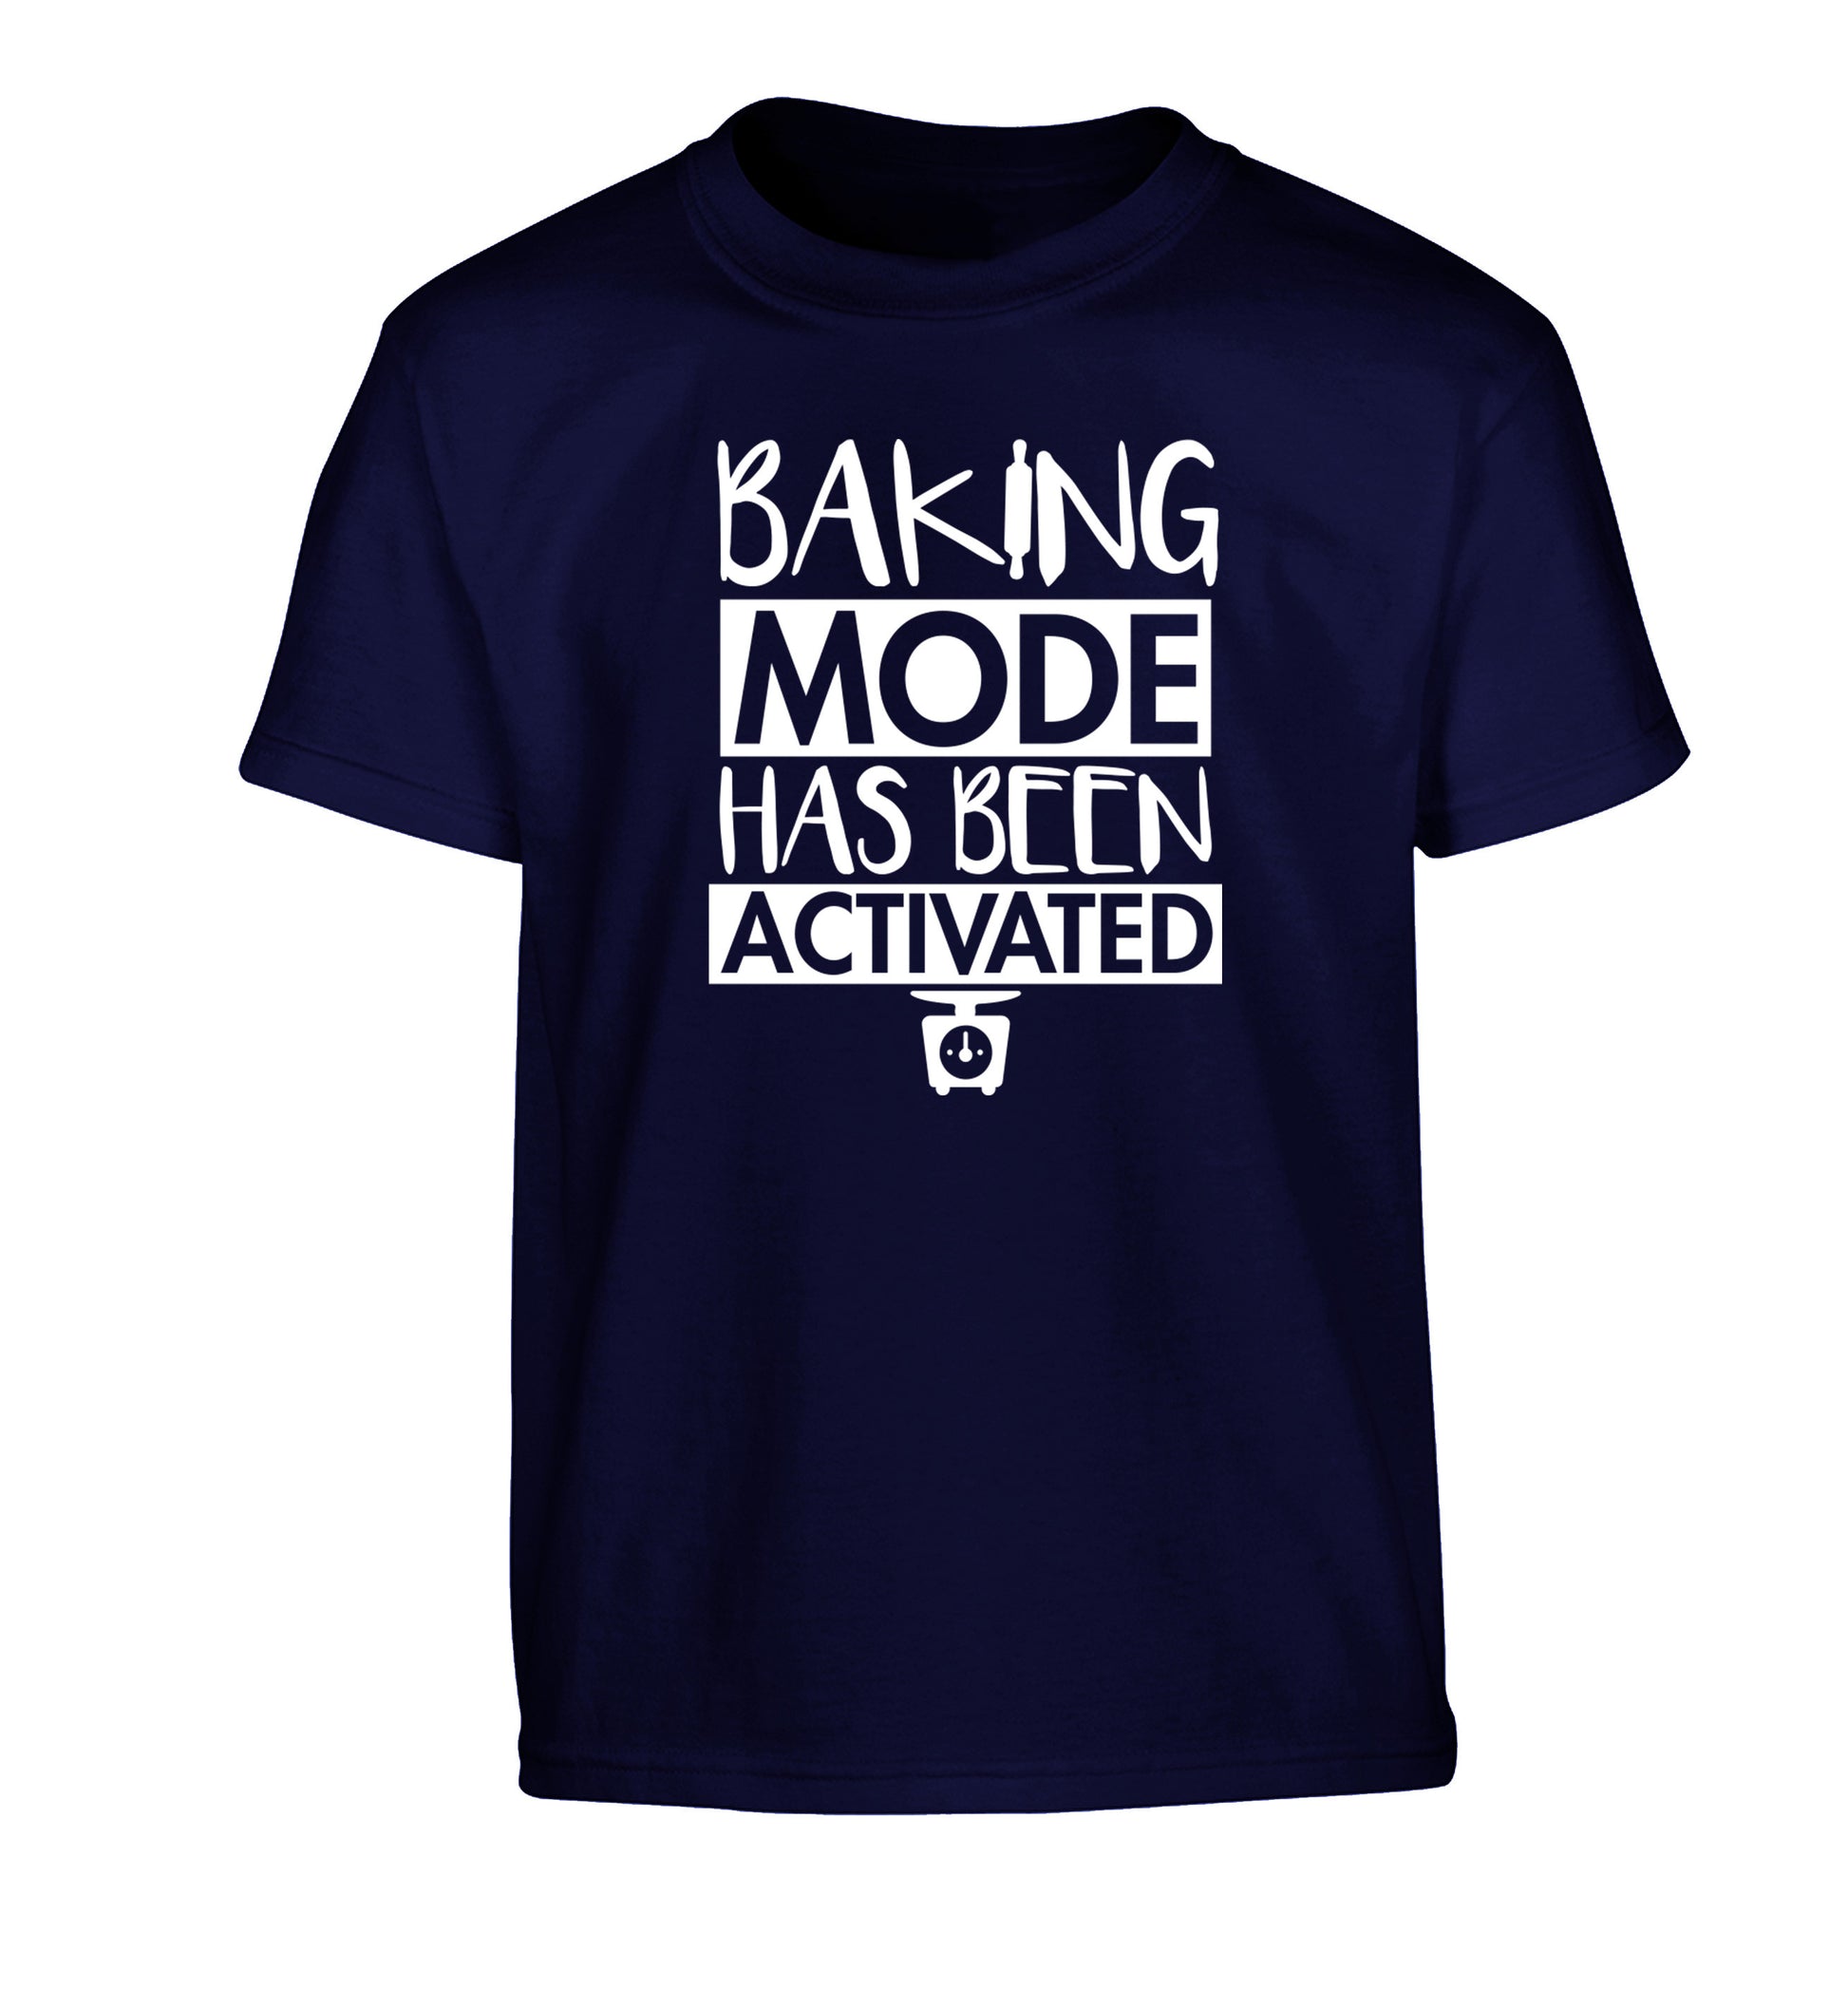 Baking mode has been activated Children's navy Tshirt 12-14 Years